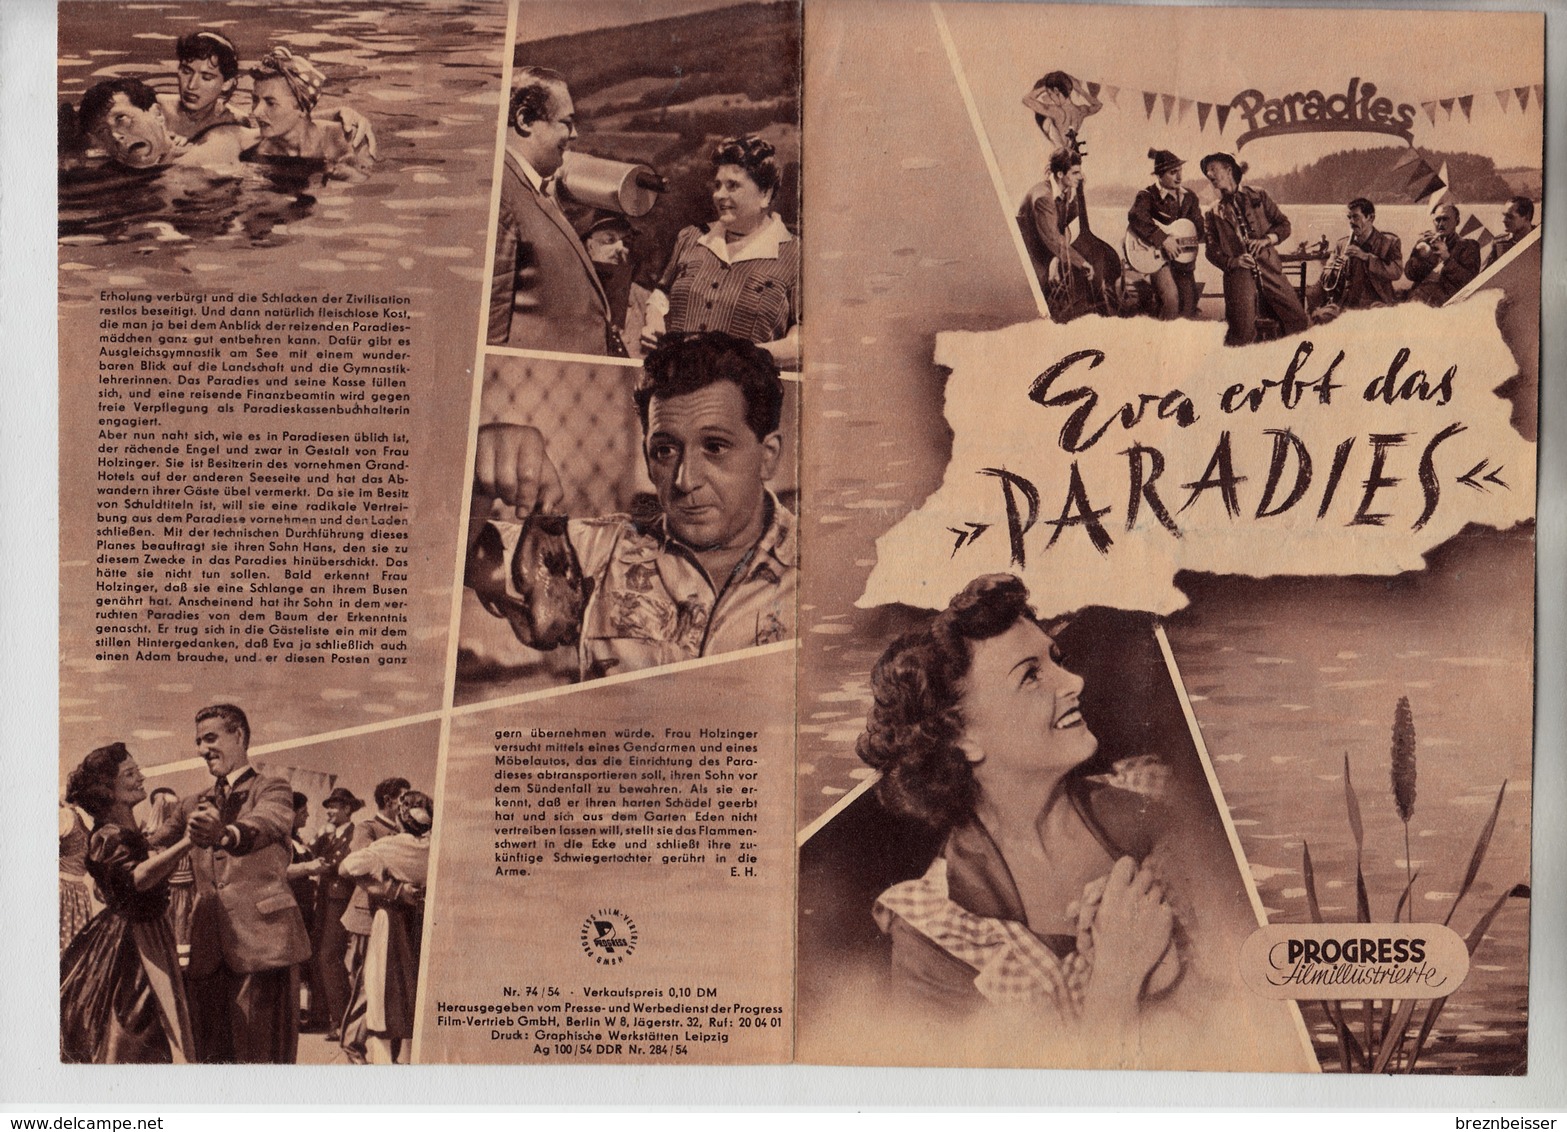 Progress Filmillustrierte 74/54 Eva Erbt Das Paradies - Zeitschriften